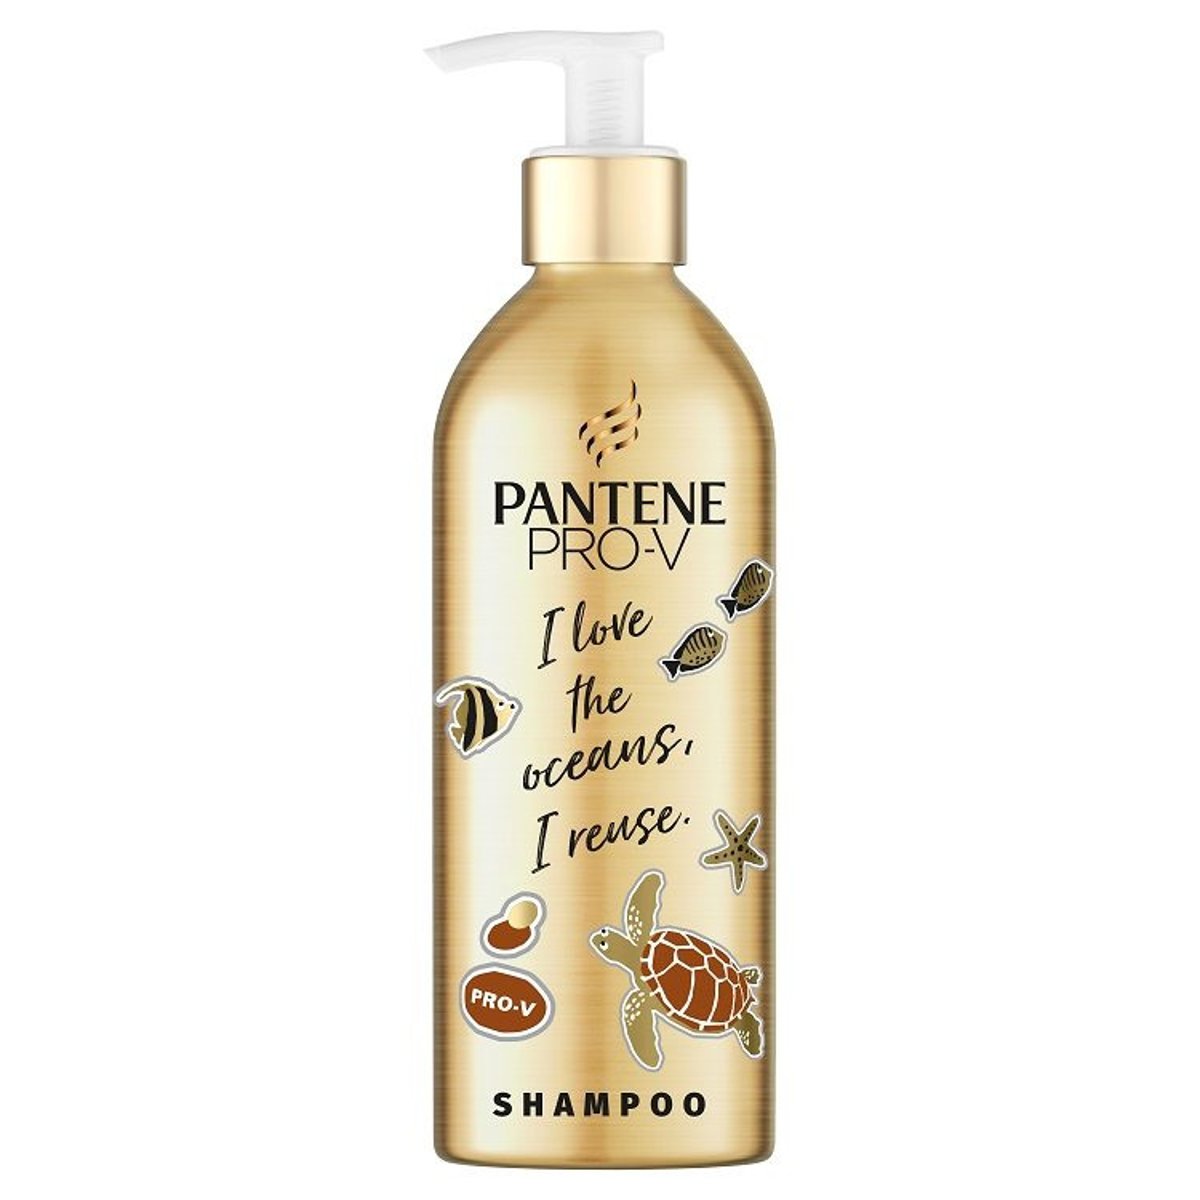 Pantene Pro-V Repair & Protect Šampon - lahev na náhradní náplň